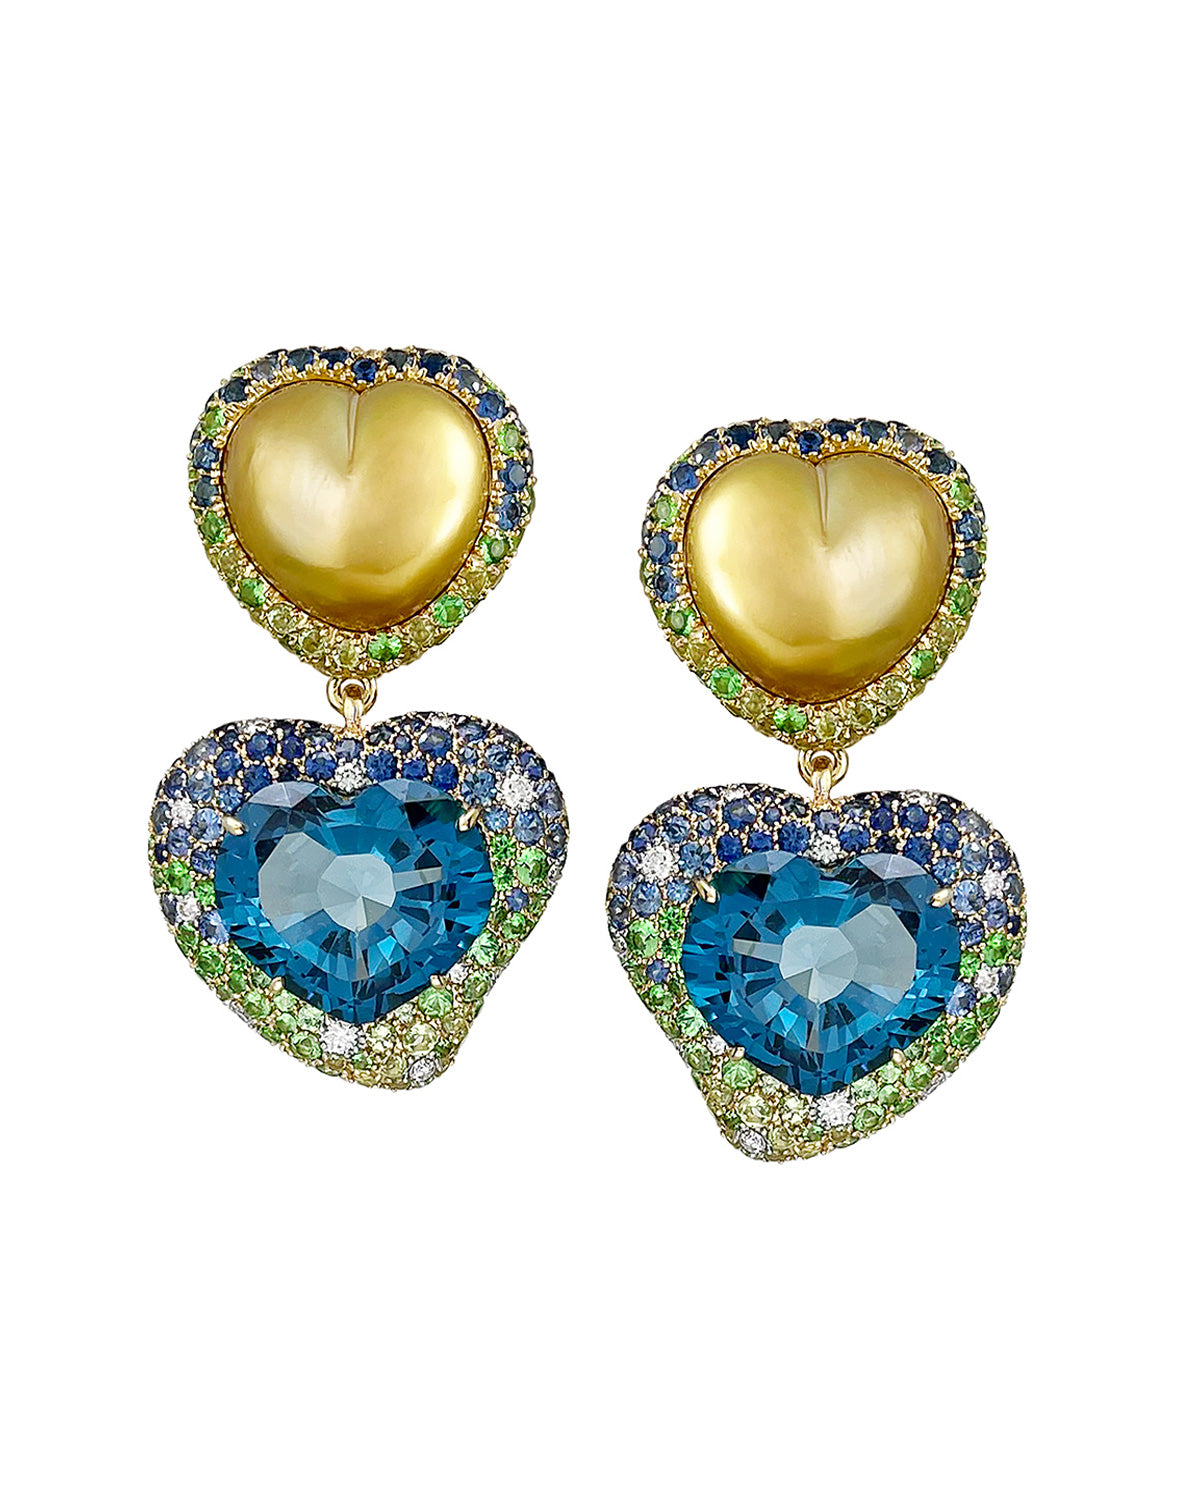 Golden Pearl & Blue Topaz Heart Earrings